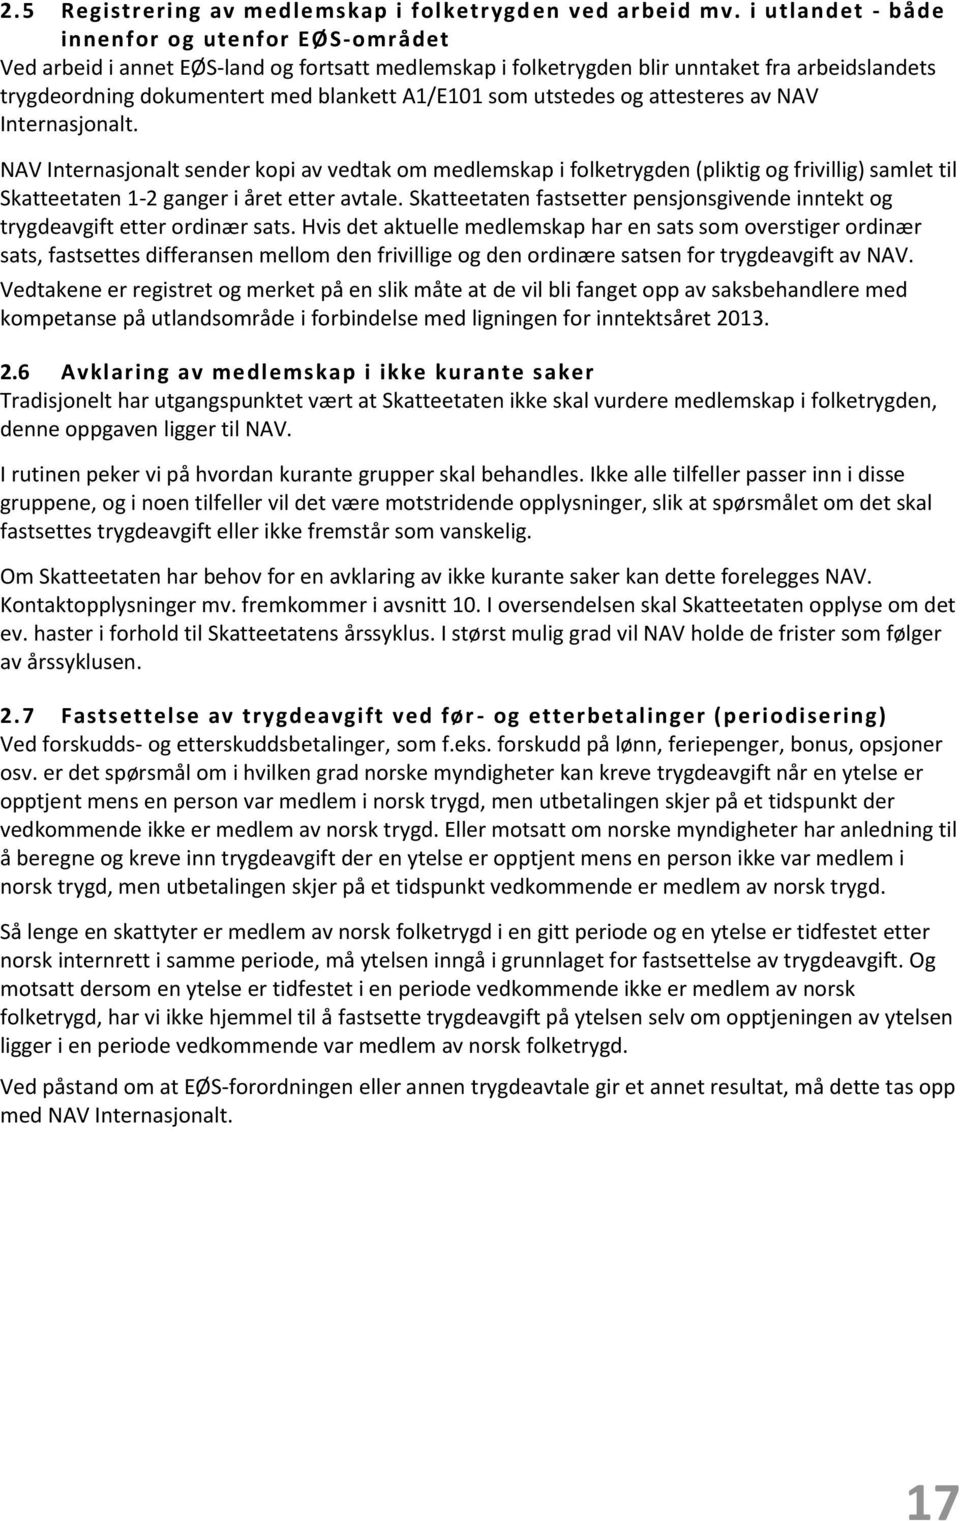 Rutiner mv. Samhandling på utlandsområdet - PDF Gratis nedlasting